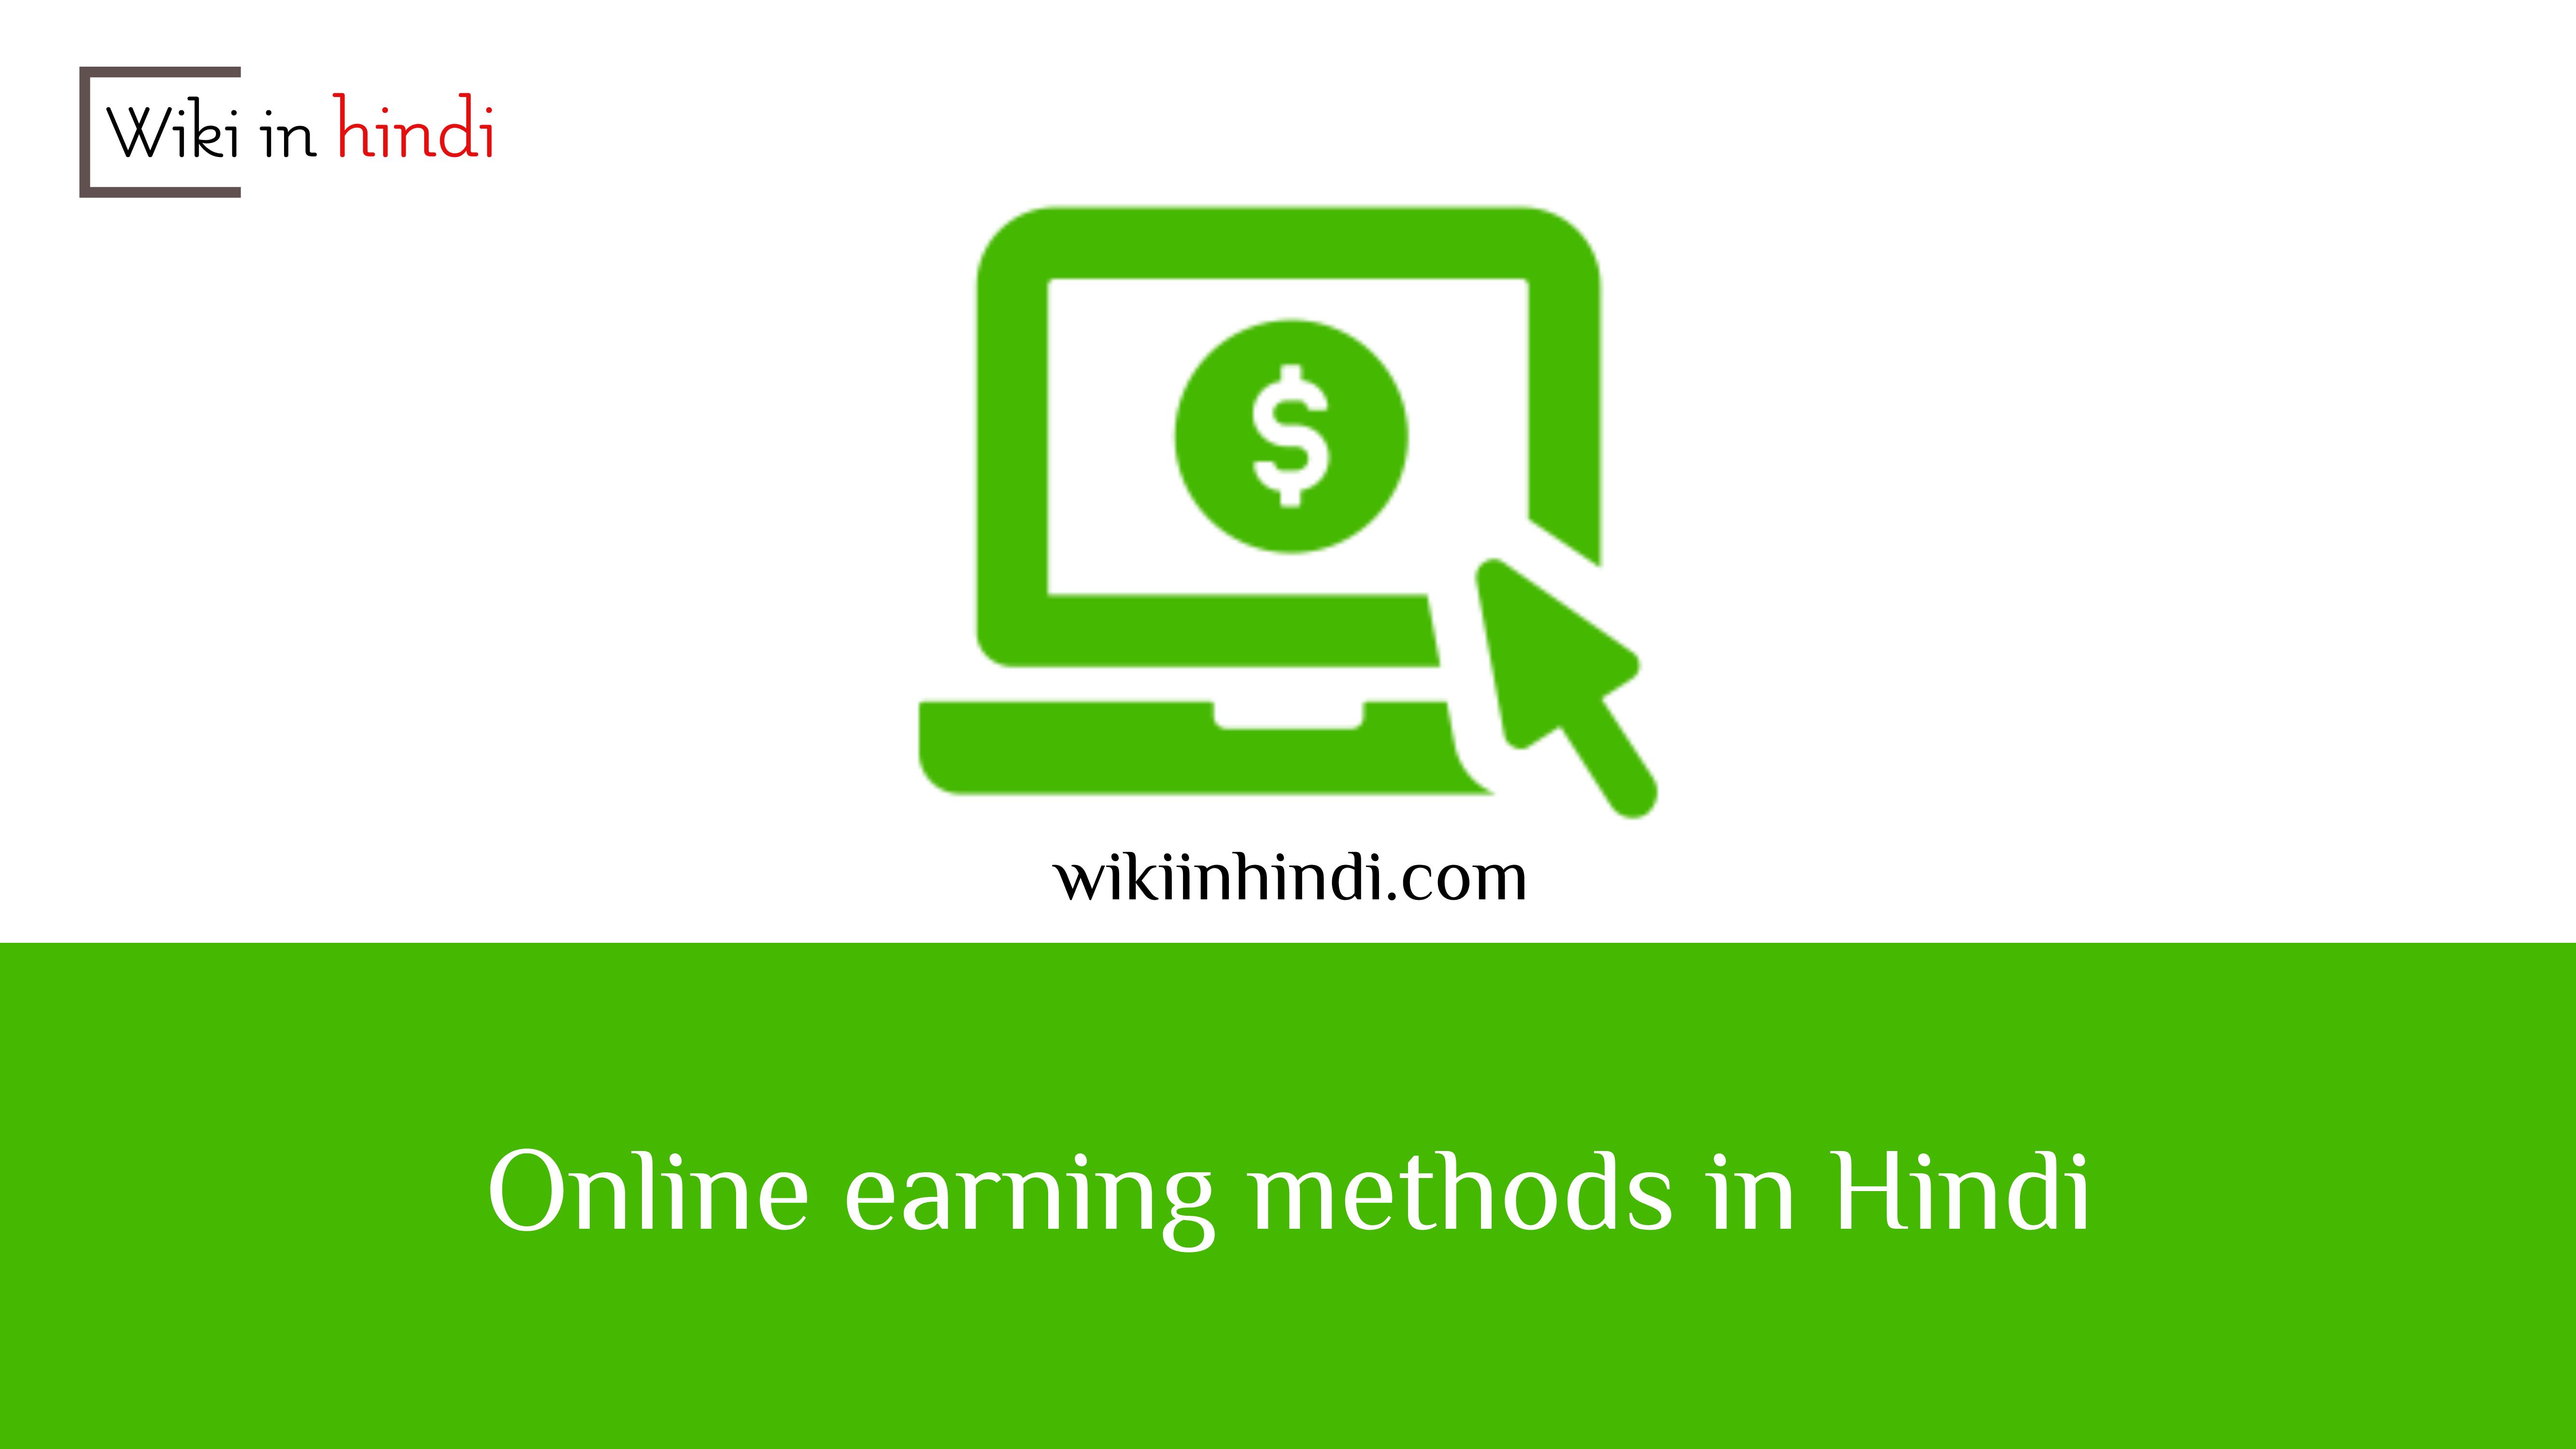 Online earning methods in Hindi